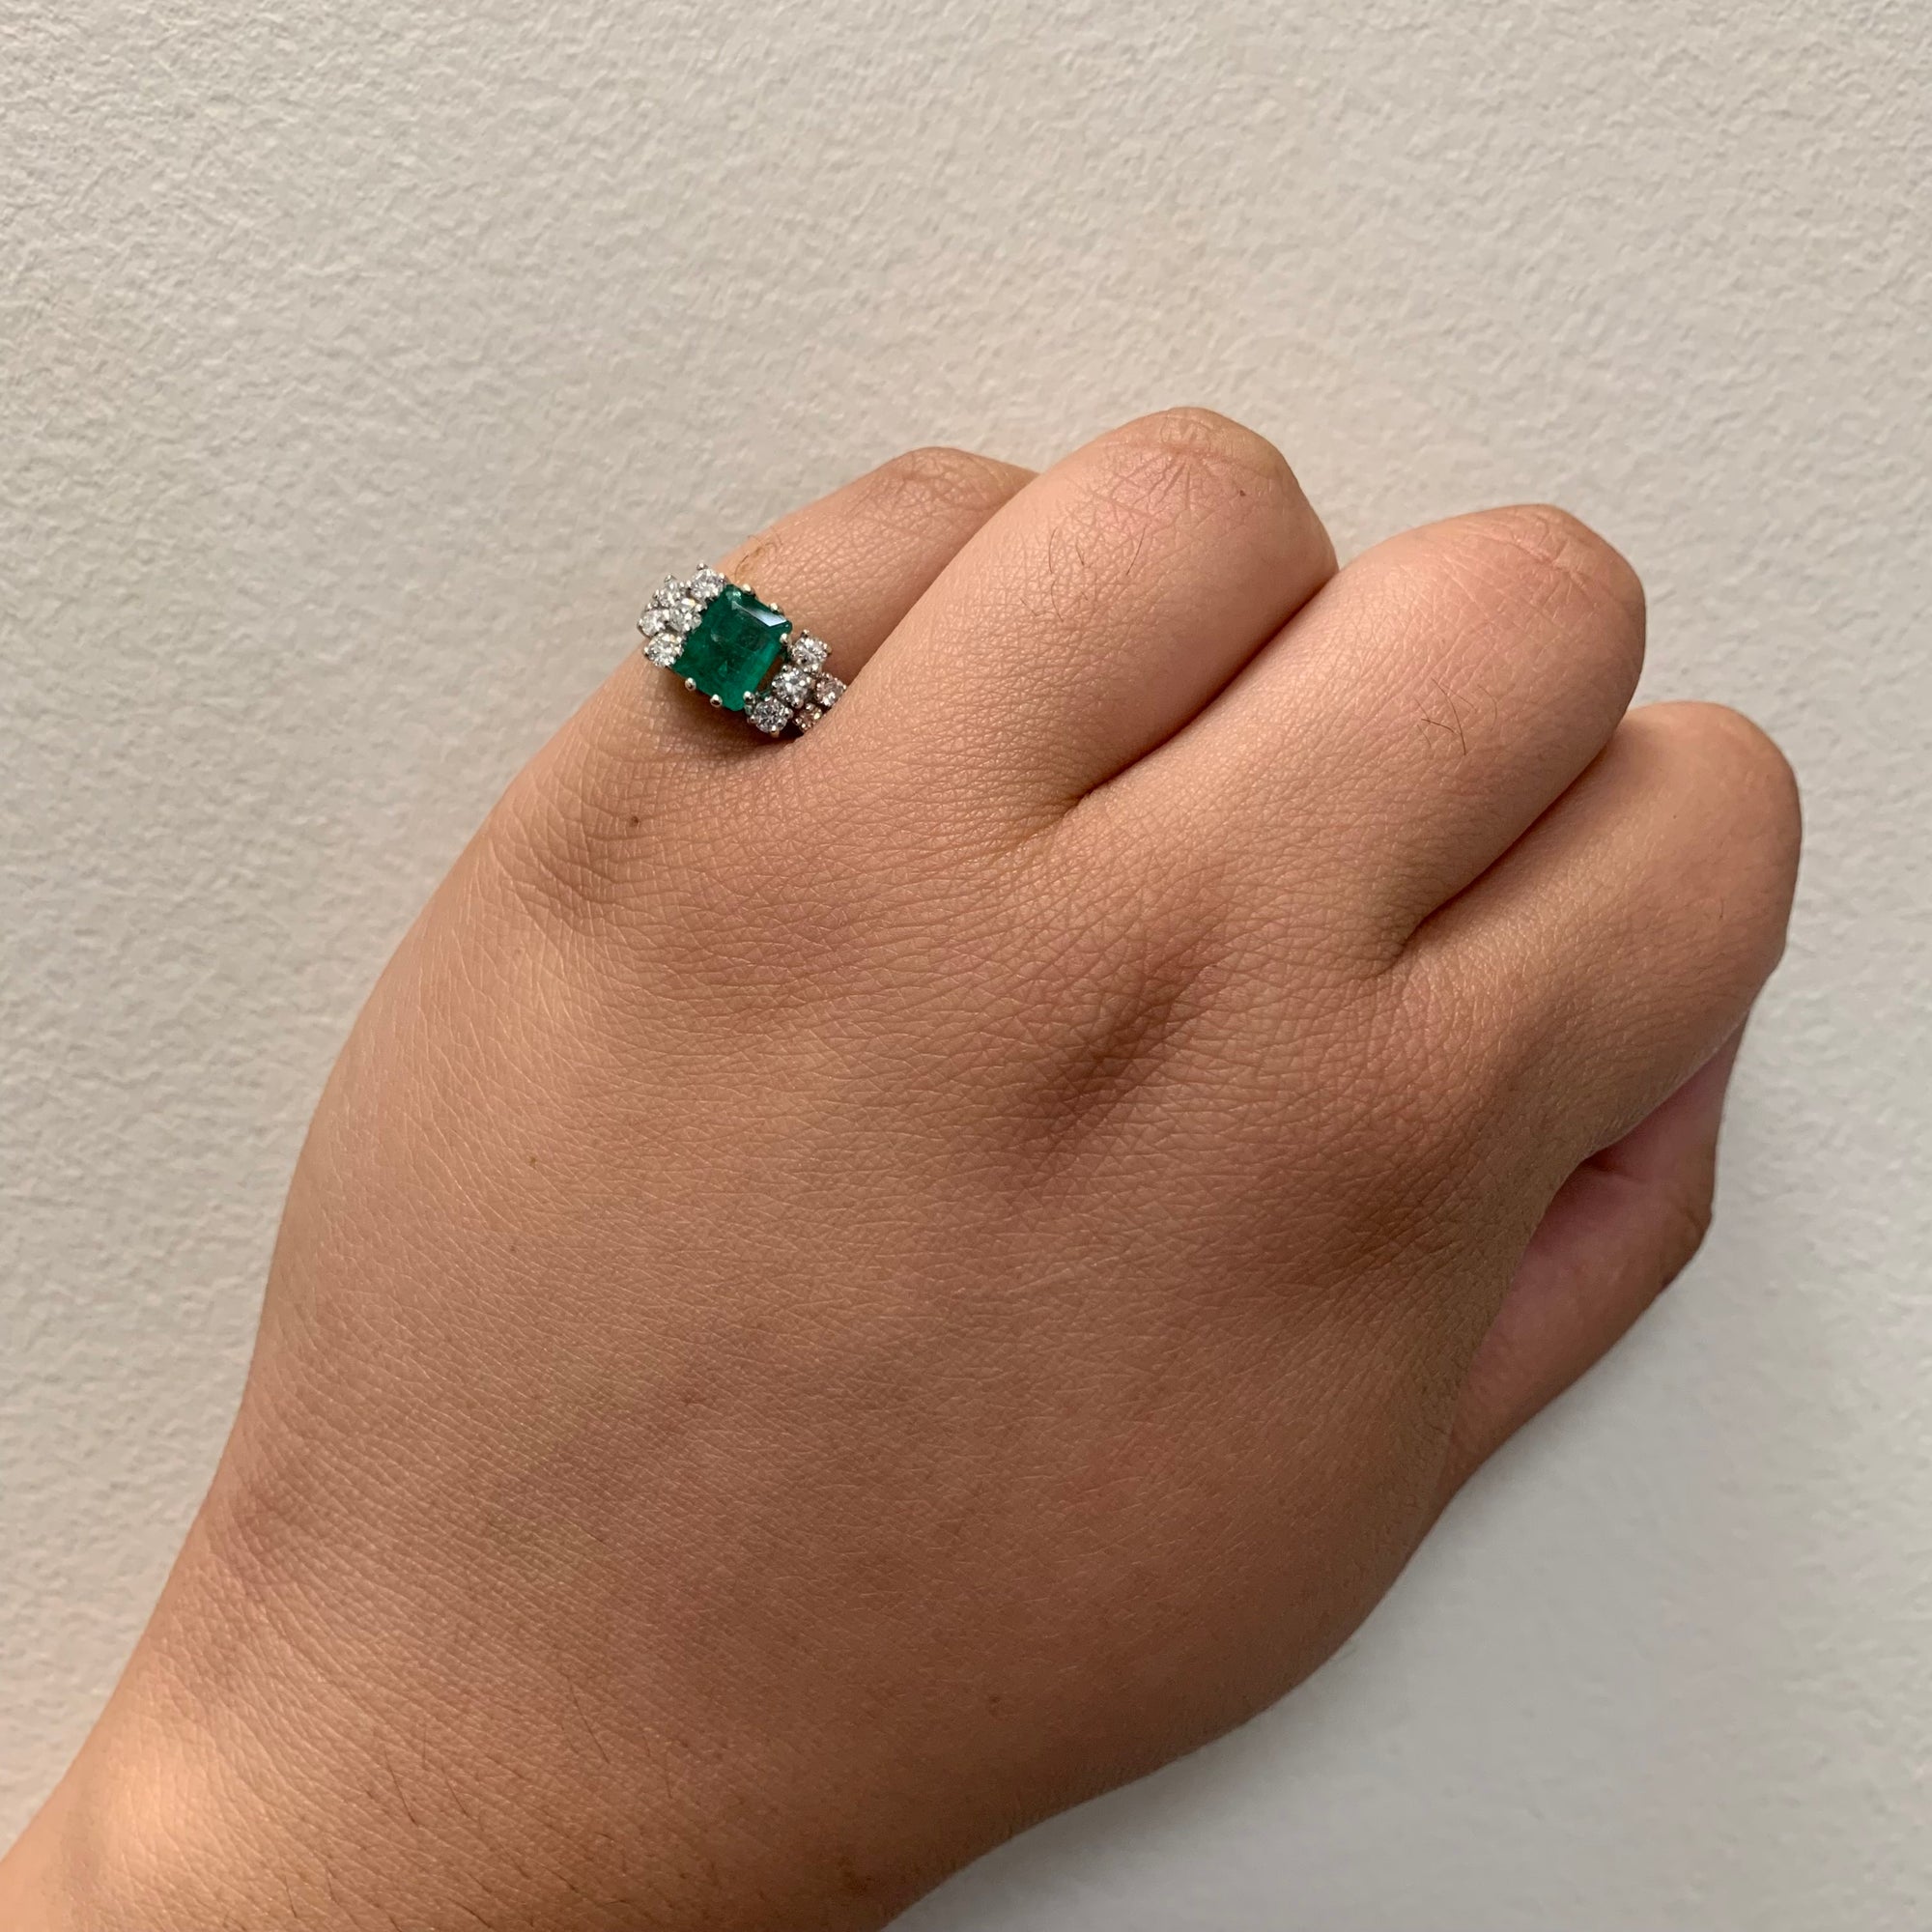 Emerald & Diamond Ring | 1.00ct, 0.42ctw | SZ 7.25 |